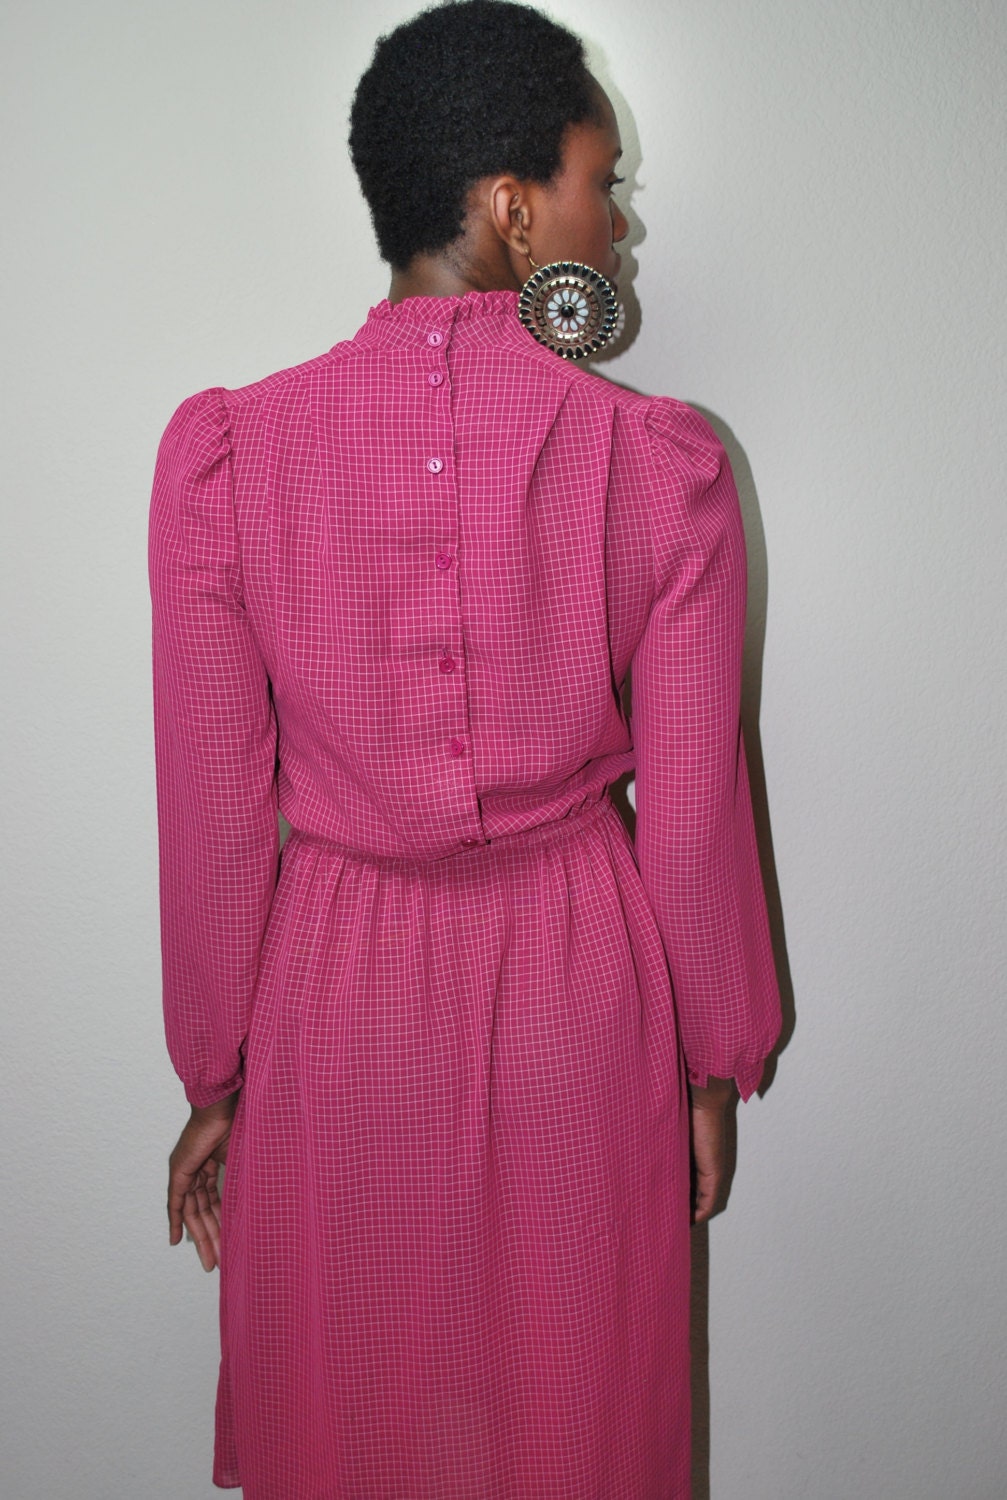 1970s professor plum/secretary dress with A-line bottom